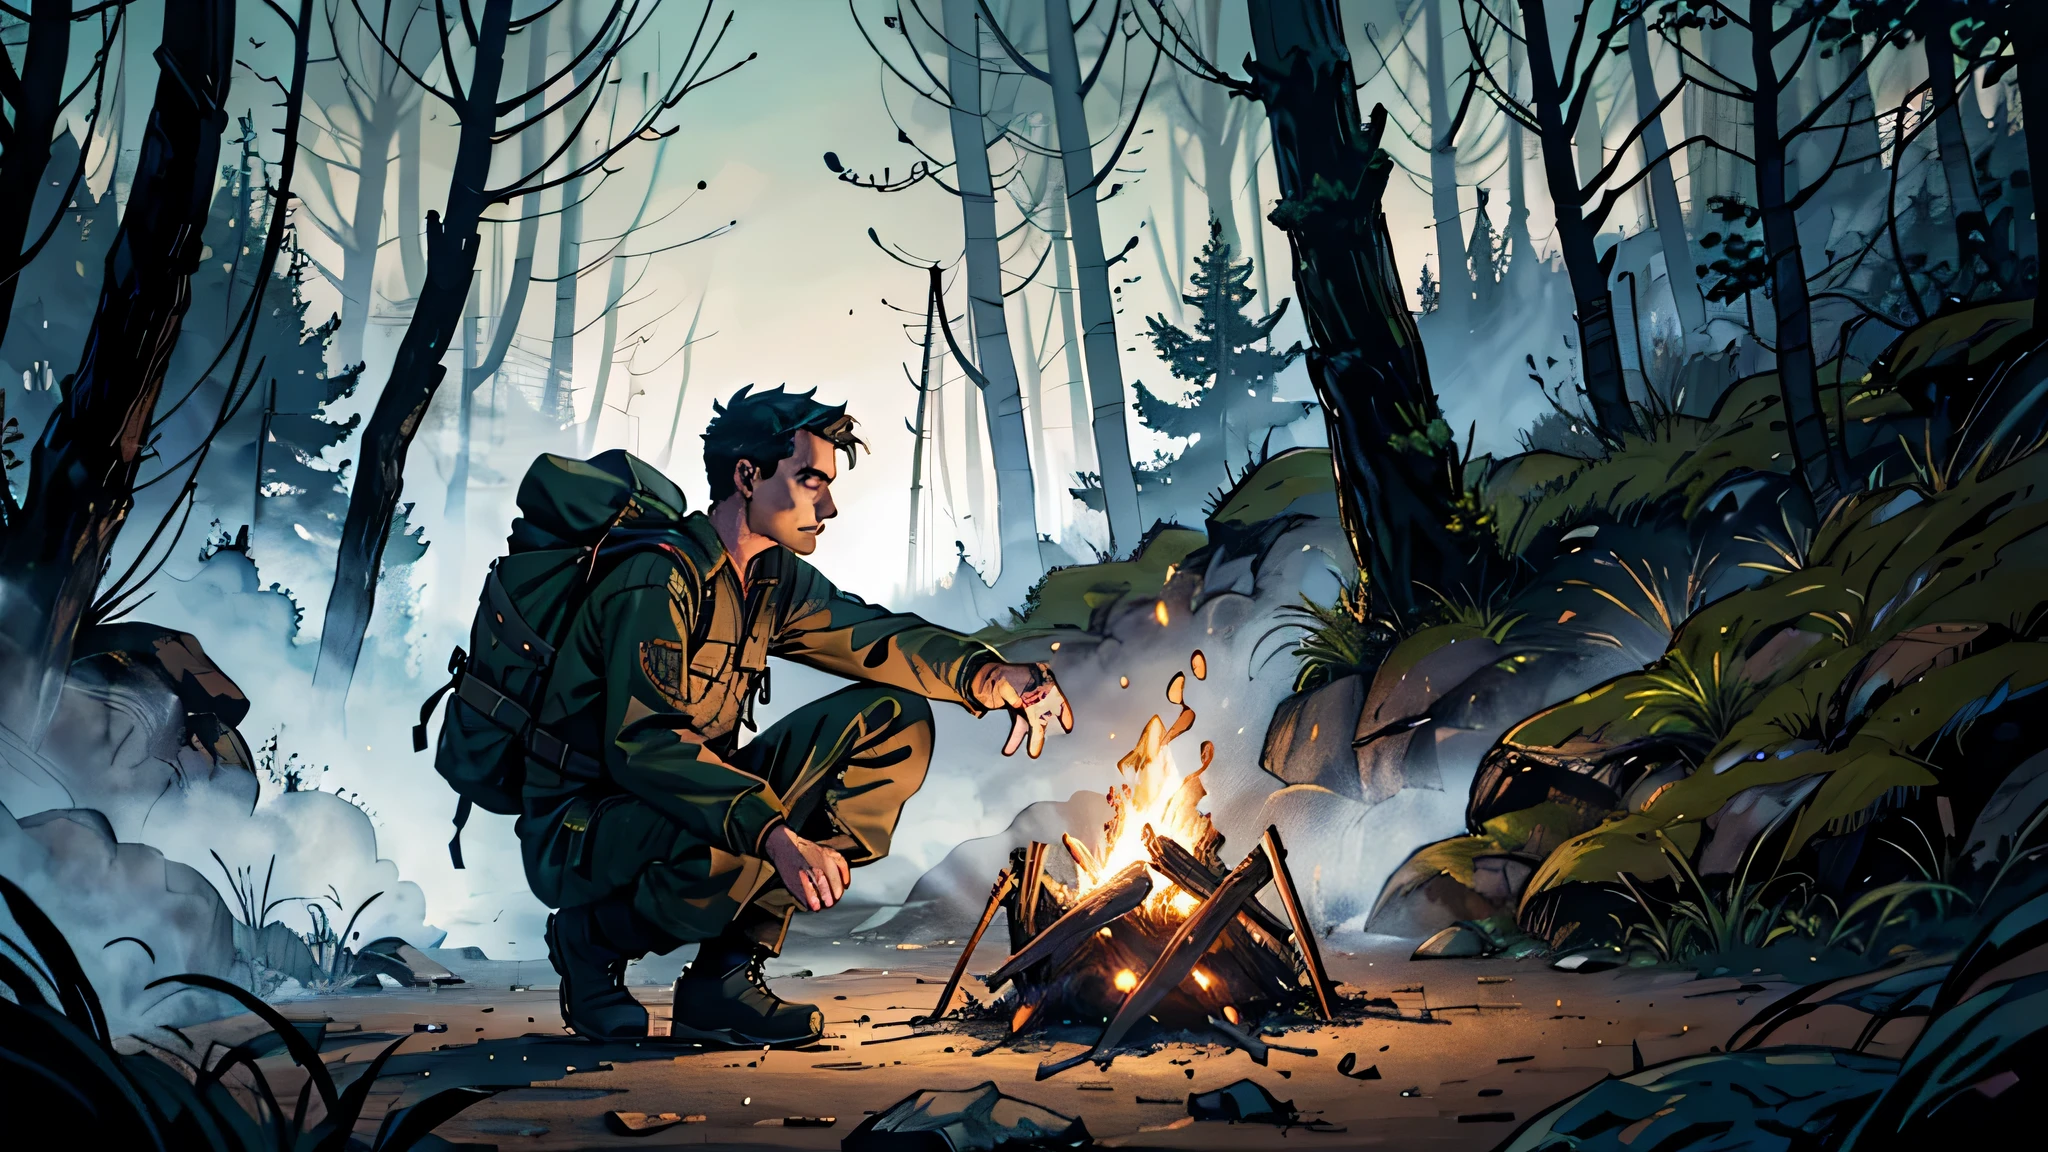 Мужчина в походной одежде, черные ботинки и брюки, темно-зеленая длинная рубашка и синий рюкзак в лесу с густыми деревьями и светом костра, горящим красноватым оттенком в ночной и зловещей обстановке.